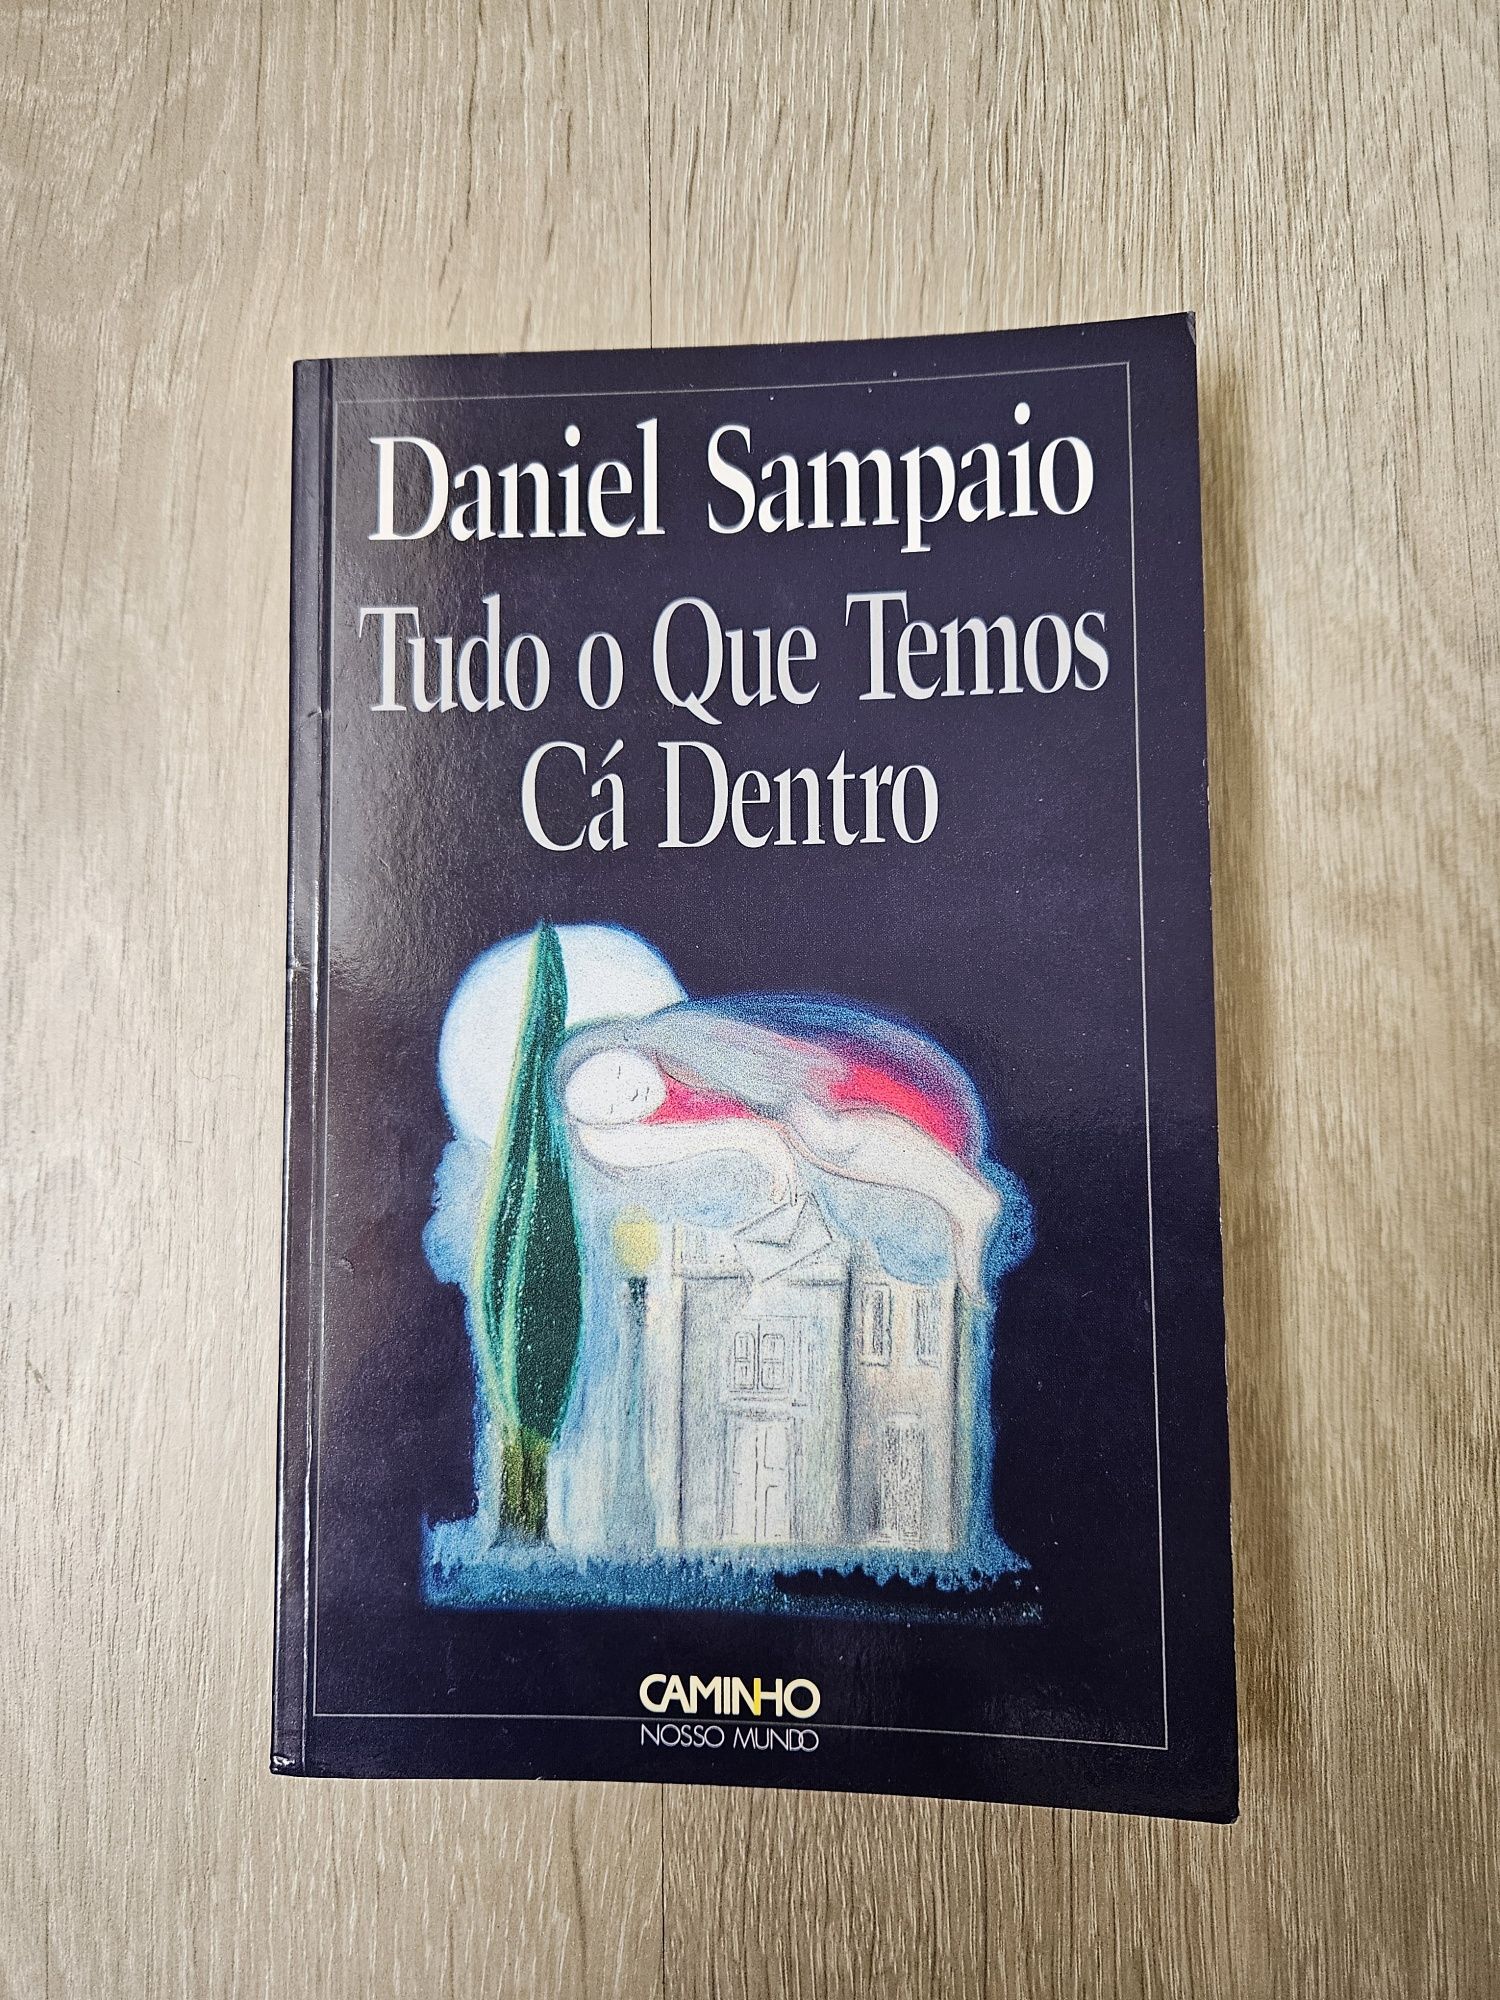 Tudo o que temos cá dentro - Daniel Sampaio